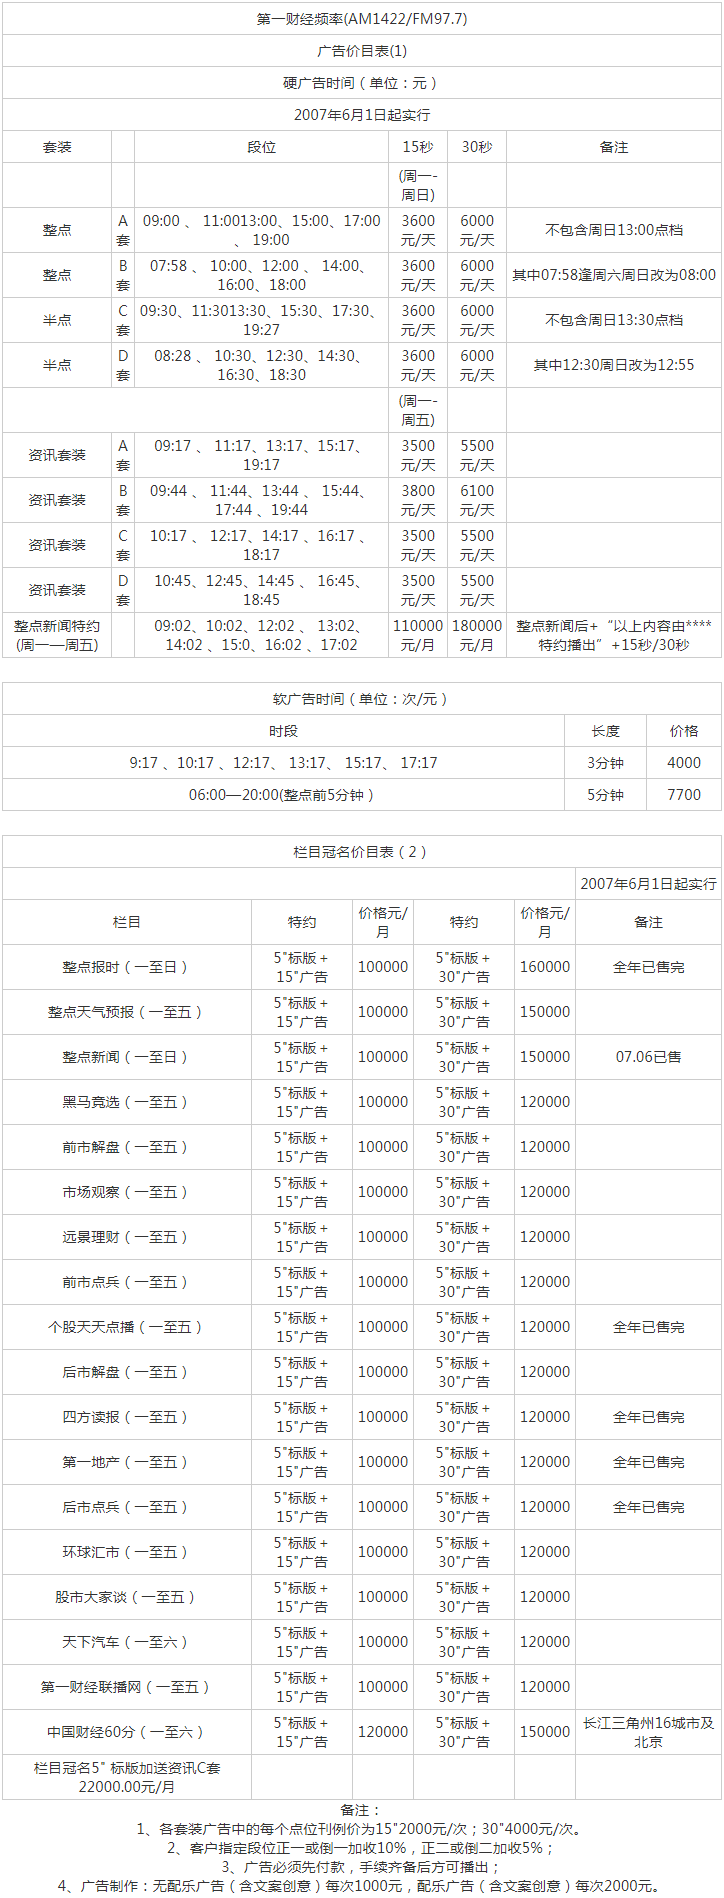 2009上海人民广播电台第一财经 AM1422_FM97.7广告报价表.png